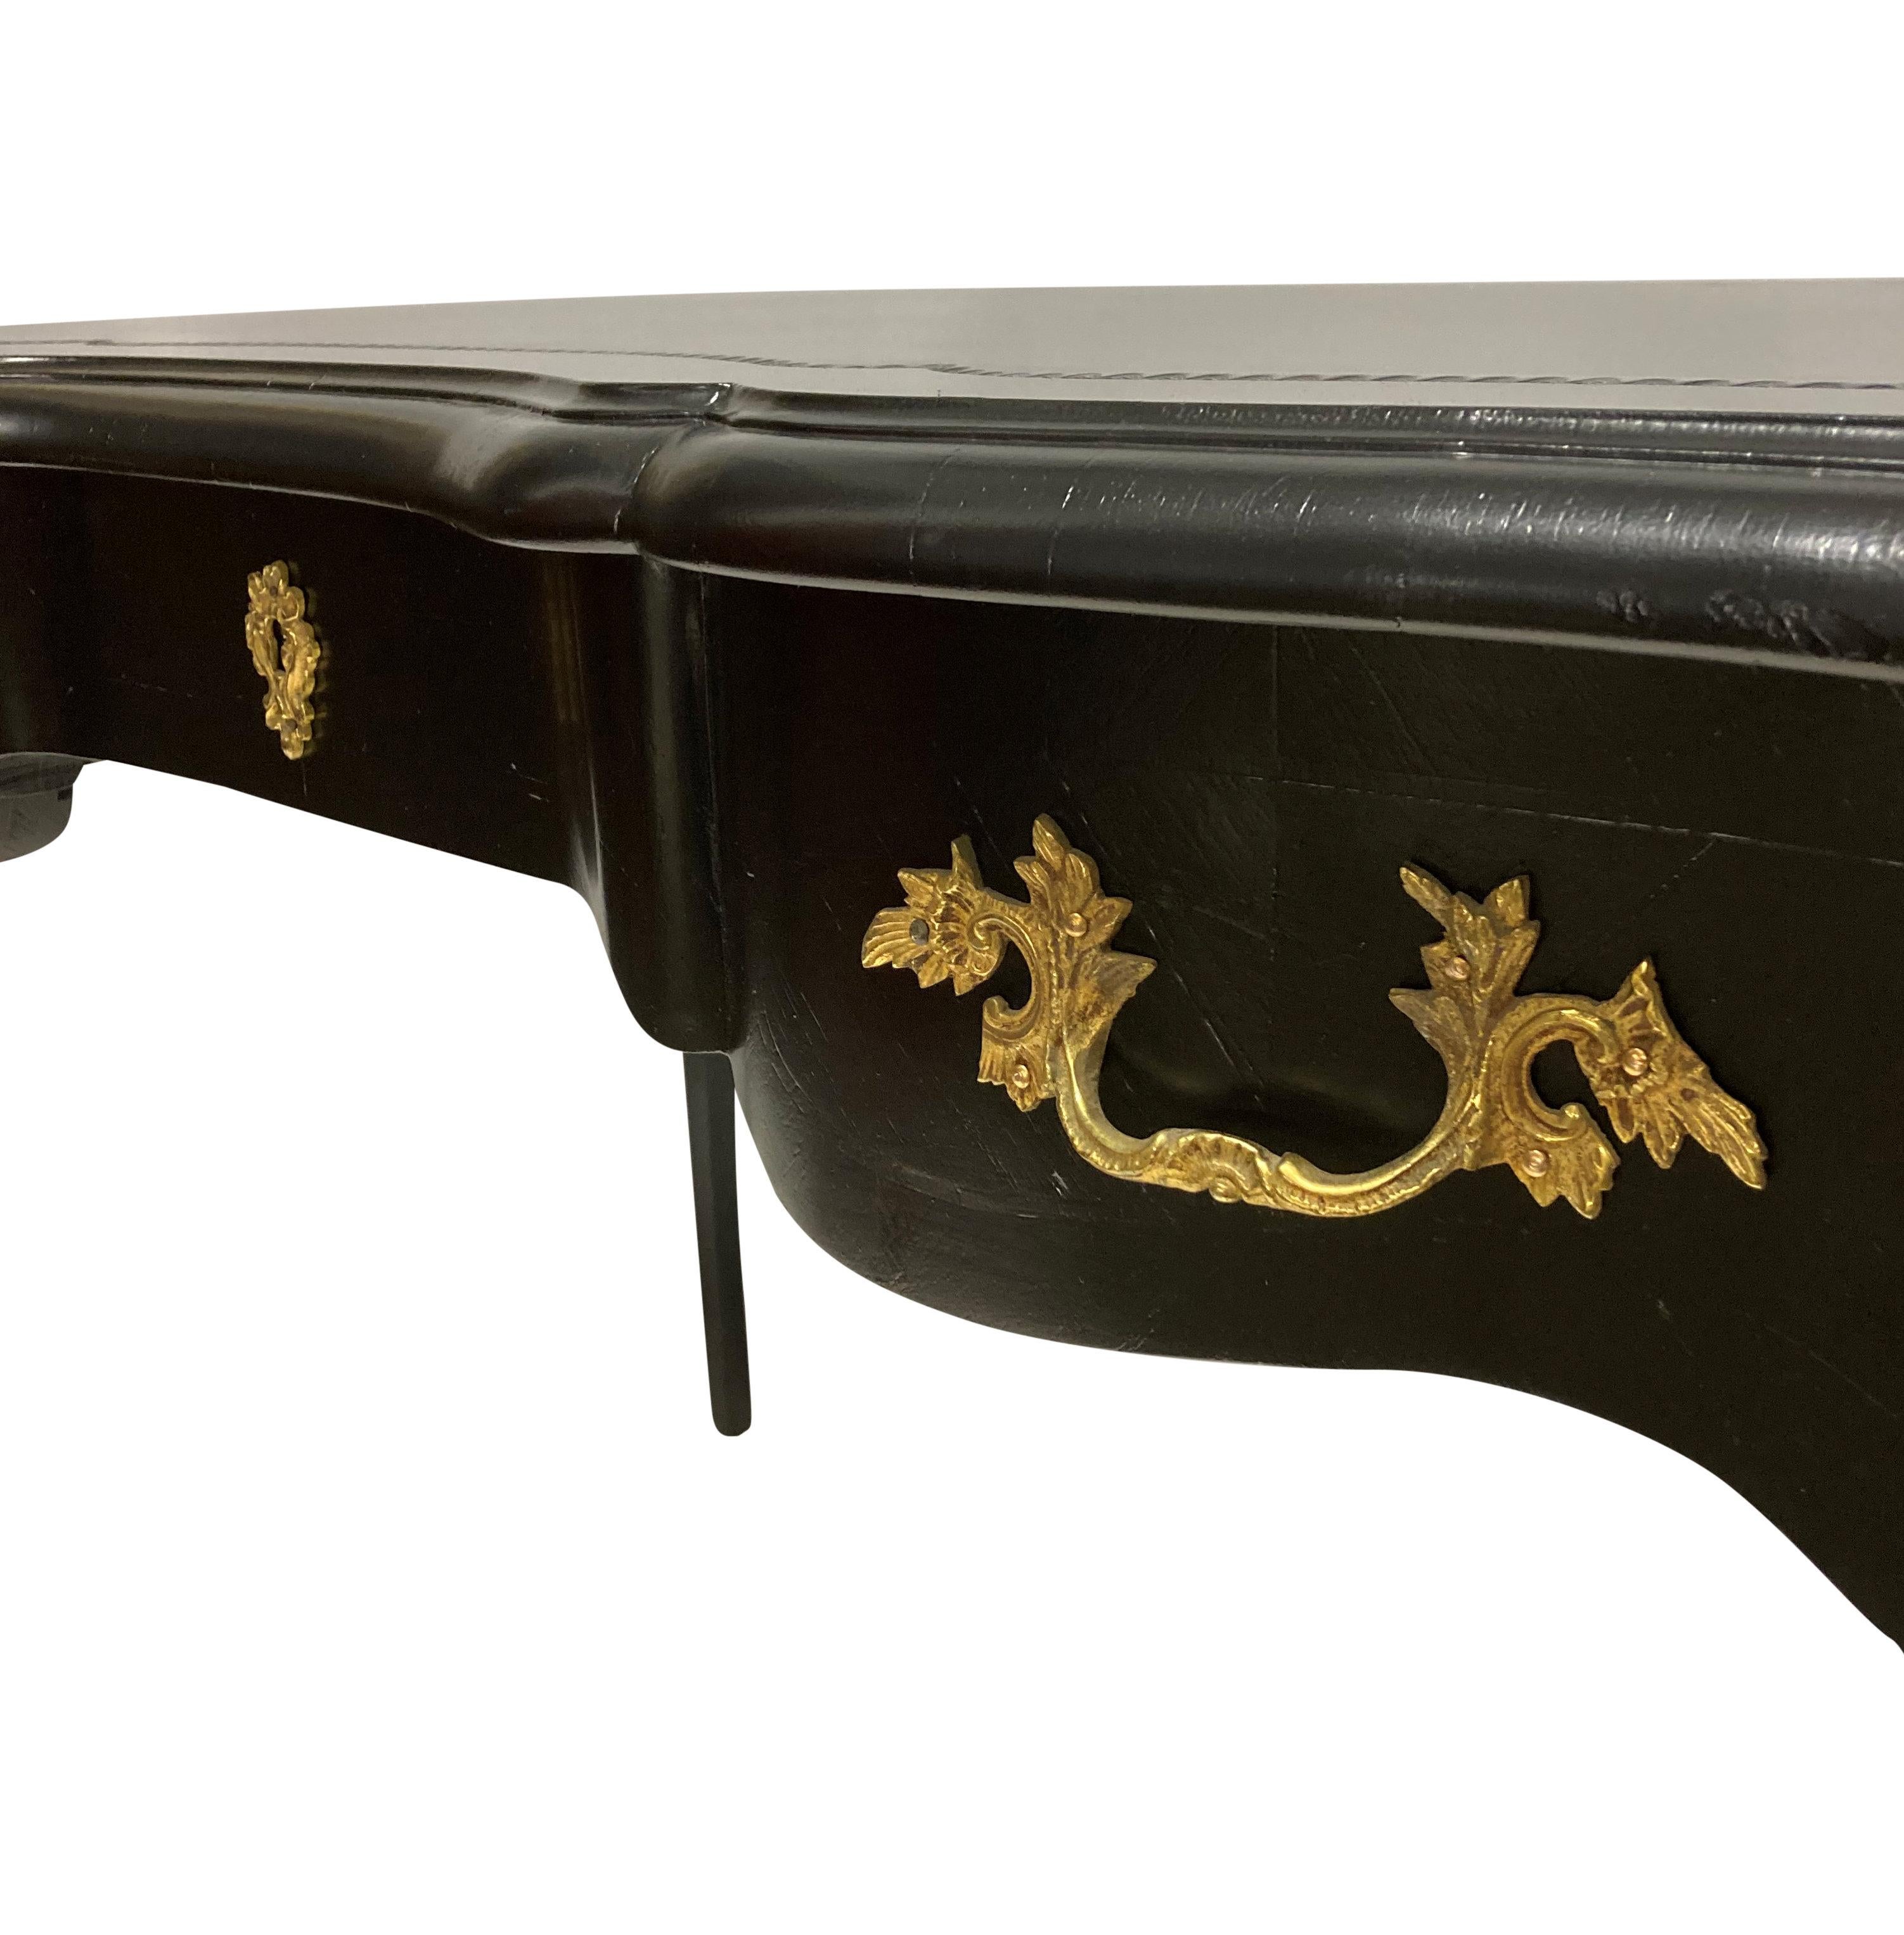 Table à écrire ou bureau plat de style Louis XV laqué noir. Avec trois tiroirs fonctionnels, y compris les tiroirs à clé et les tiroirs aveugles d'origine à l'avant. Il est orné de fines montures en bronze doré et d'un couvercle en cuir noir façonné